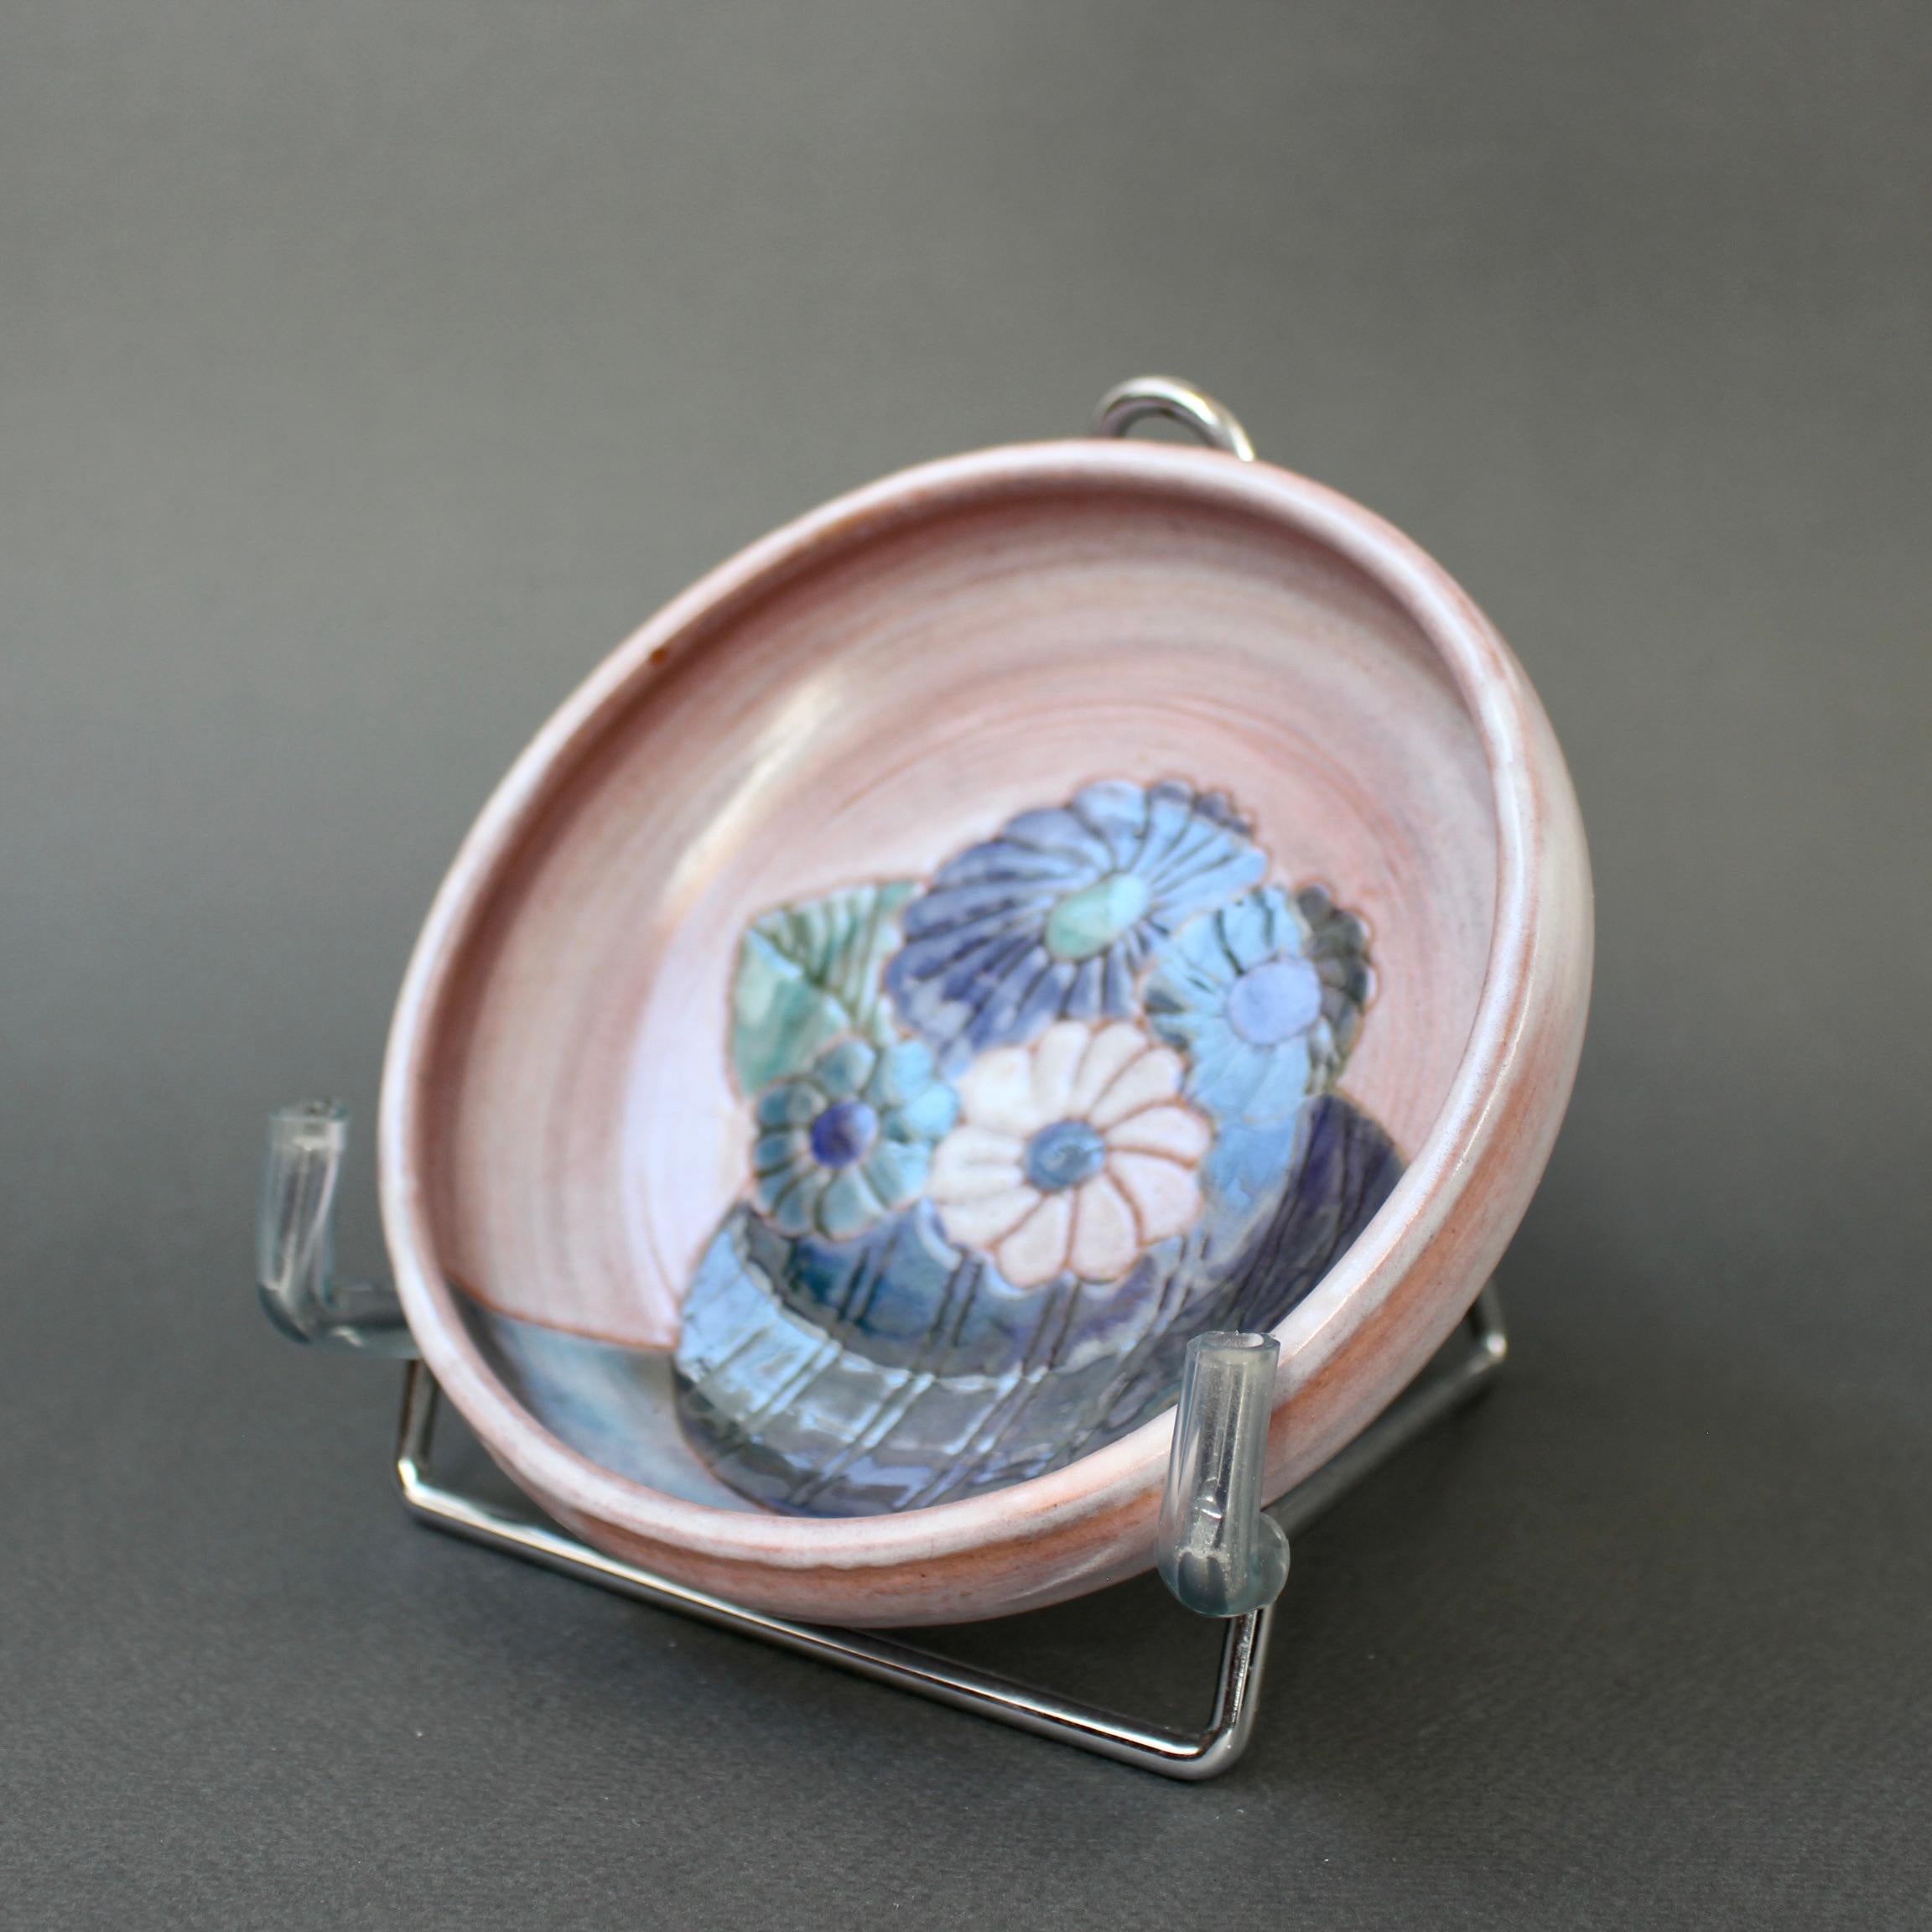 Kleine dekorative Schale aus französischer Keramik von den Frères Cloutier (ca. 1970er Jahre). Eine bezaubernde, dekorative Schale in der typischen rosa Farbe der Cloutiers. Es ist sofort als ihres zu erkennen. Am Sockel der Schale ein Stillleben